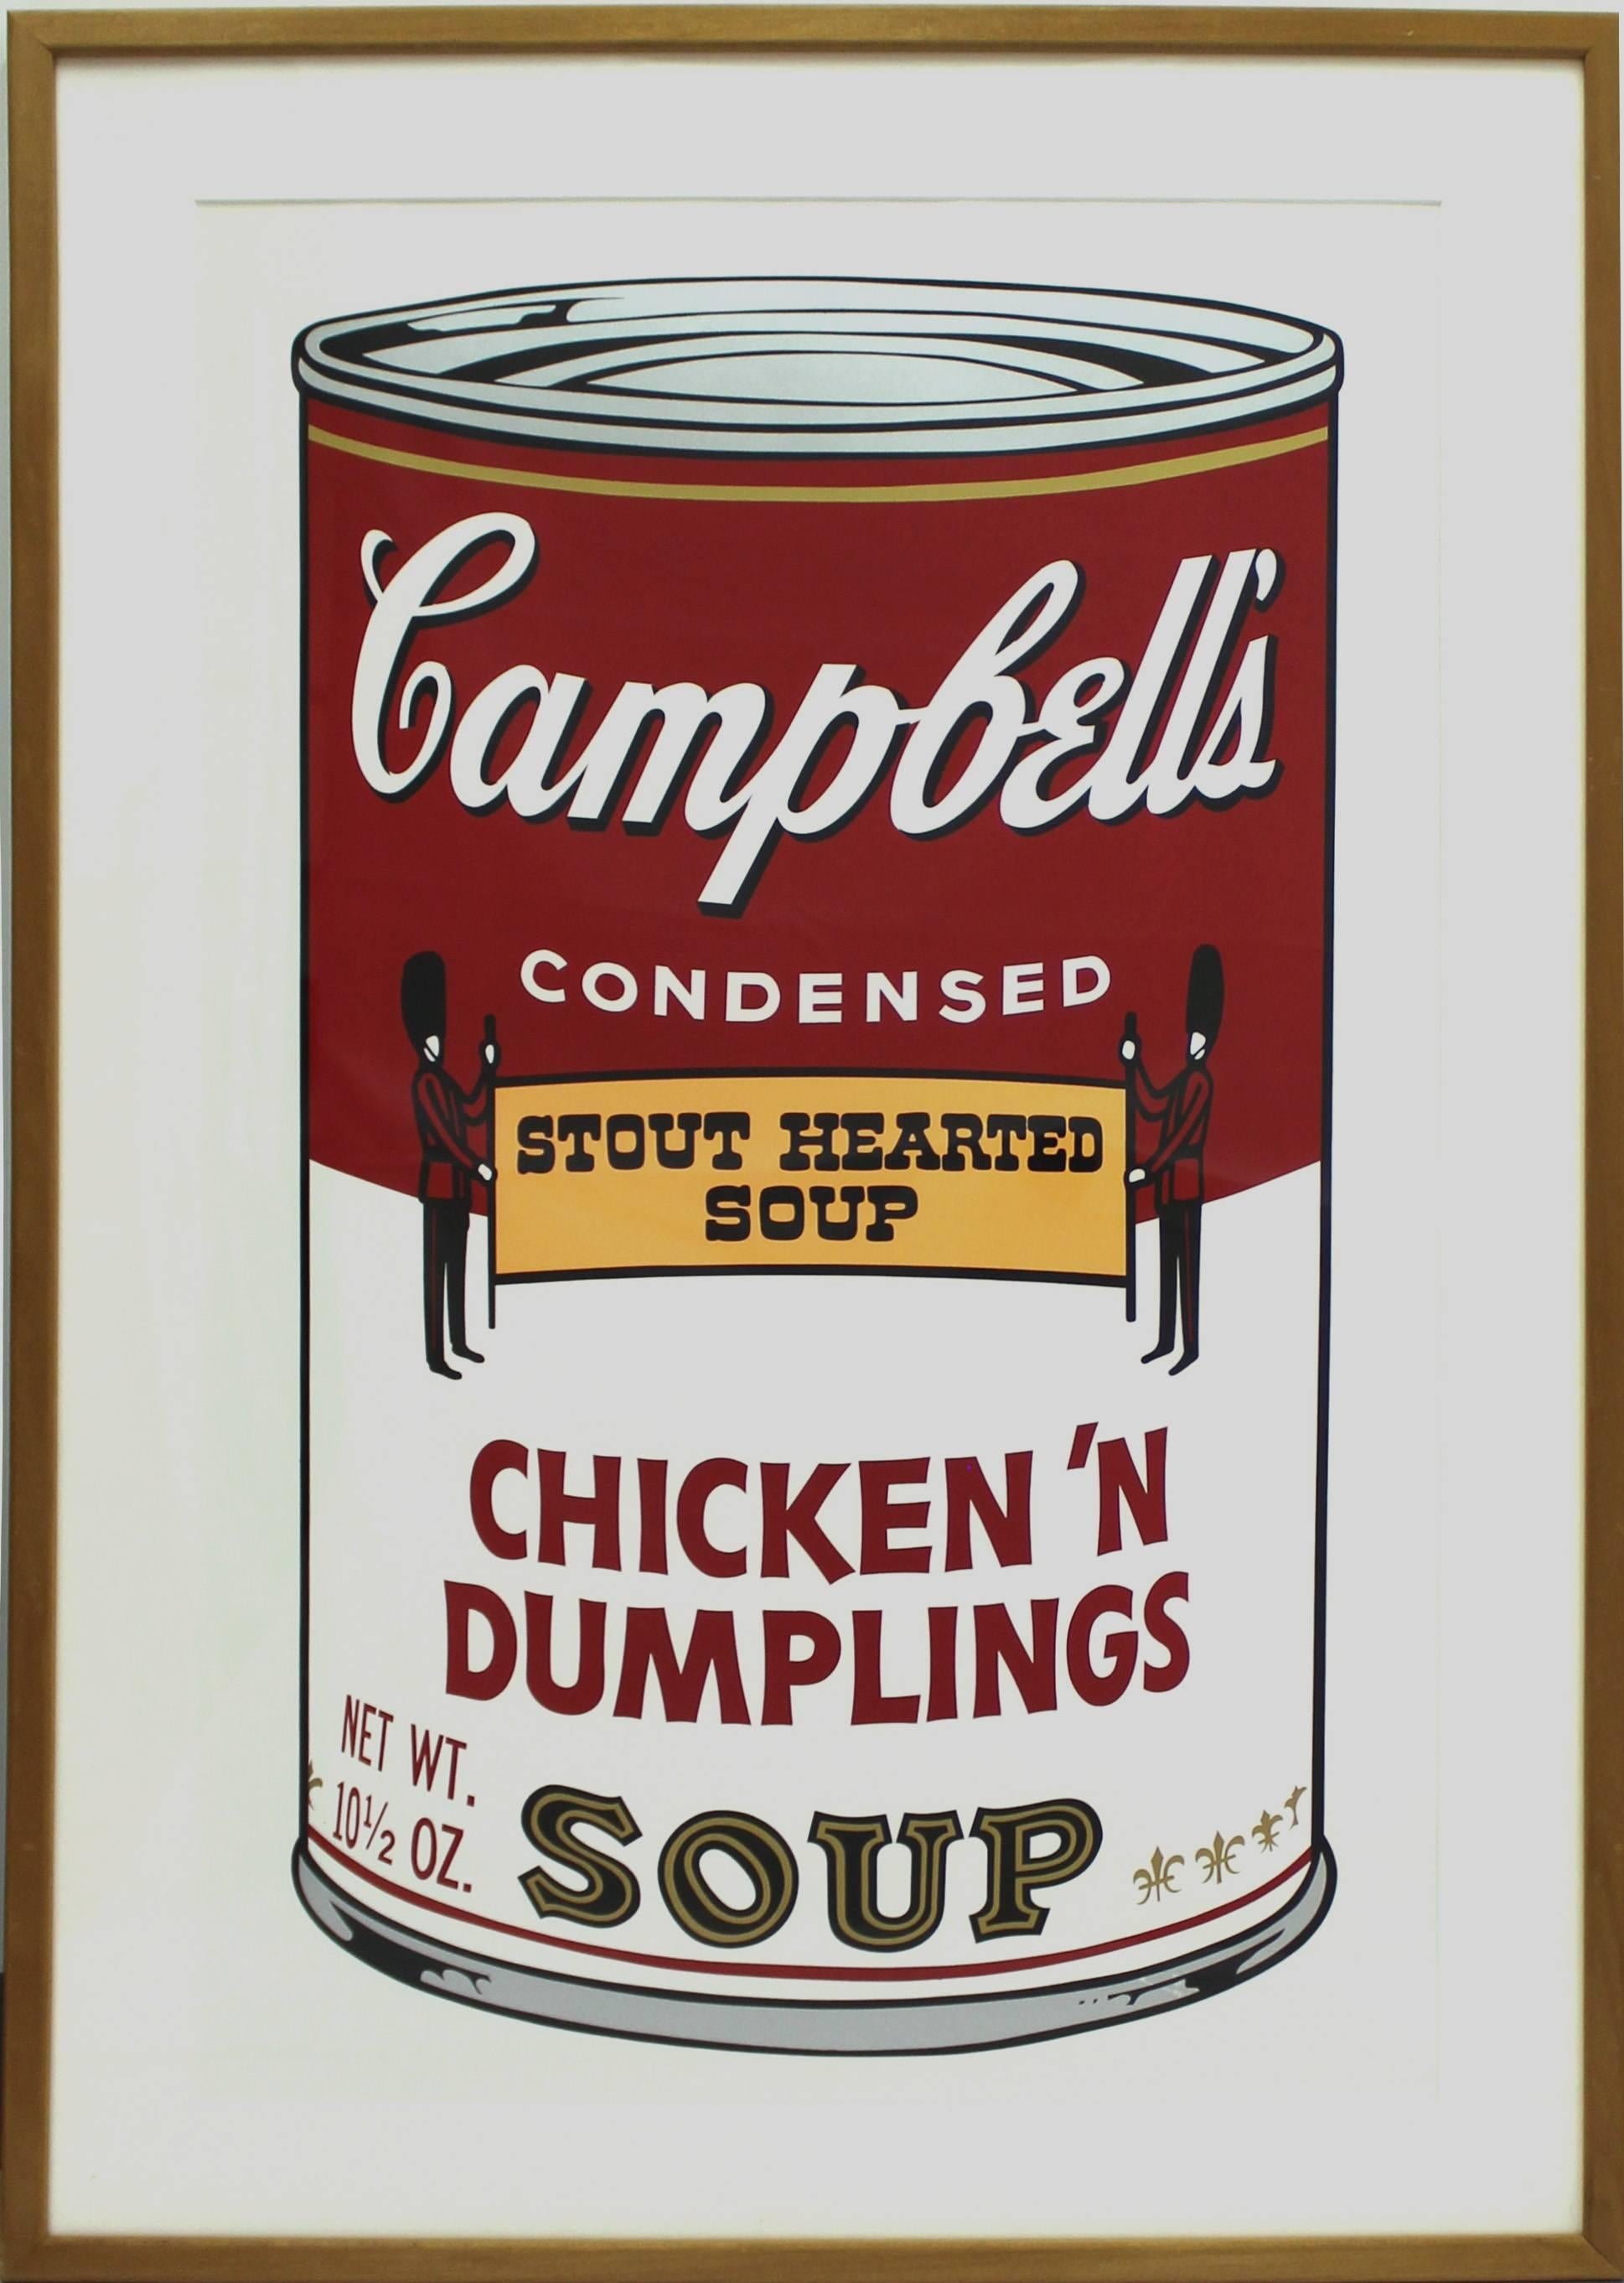 Campbell's Soup Chicken 'n Dumplings (FS II.58) - Print by Andy Warhol